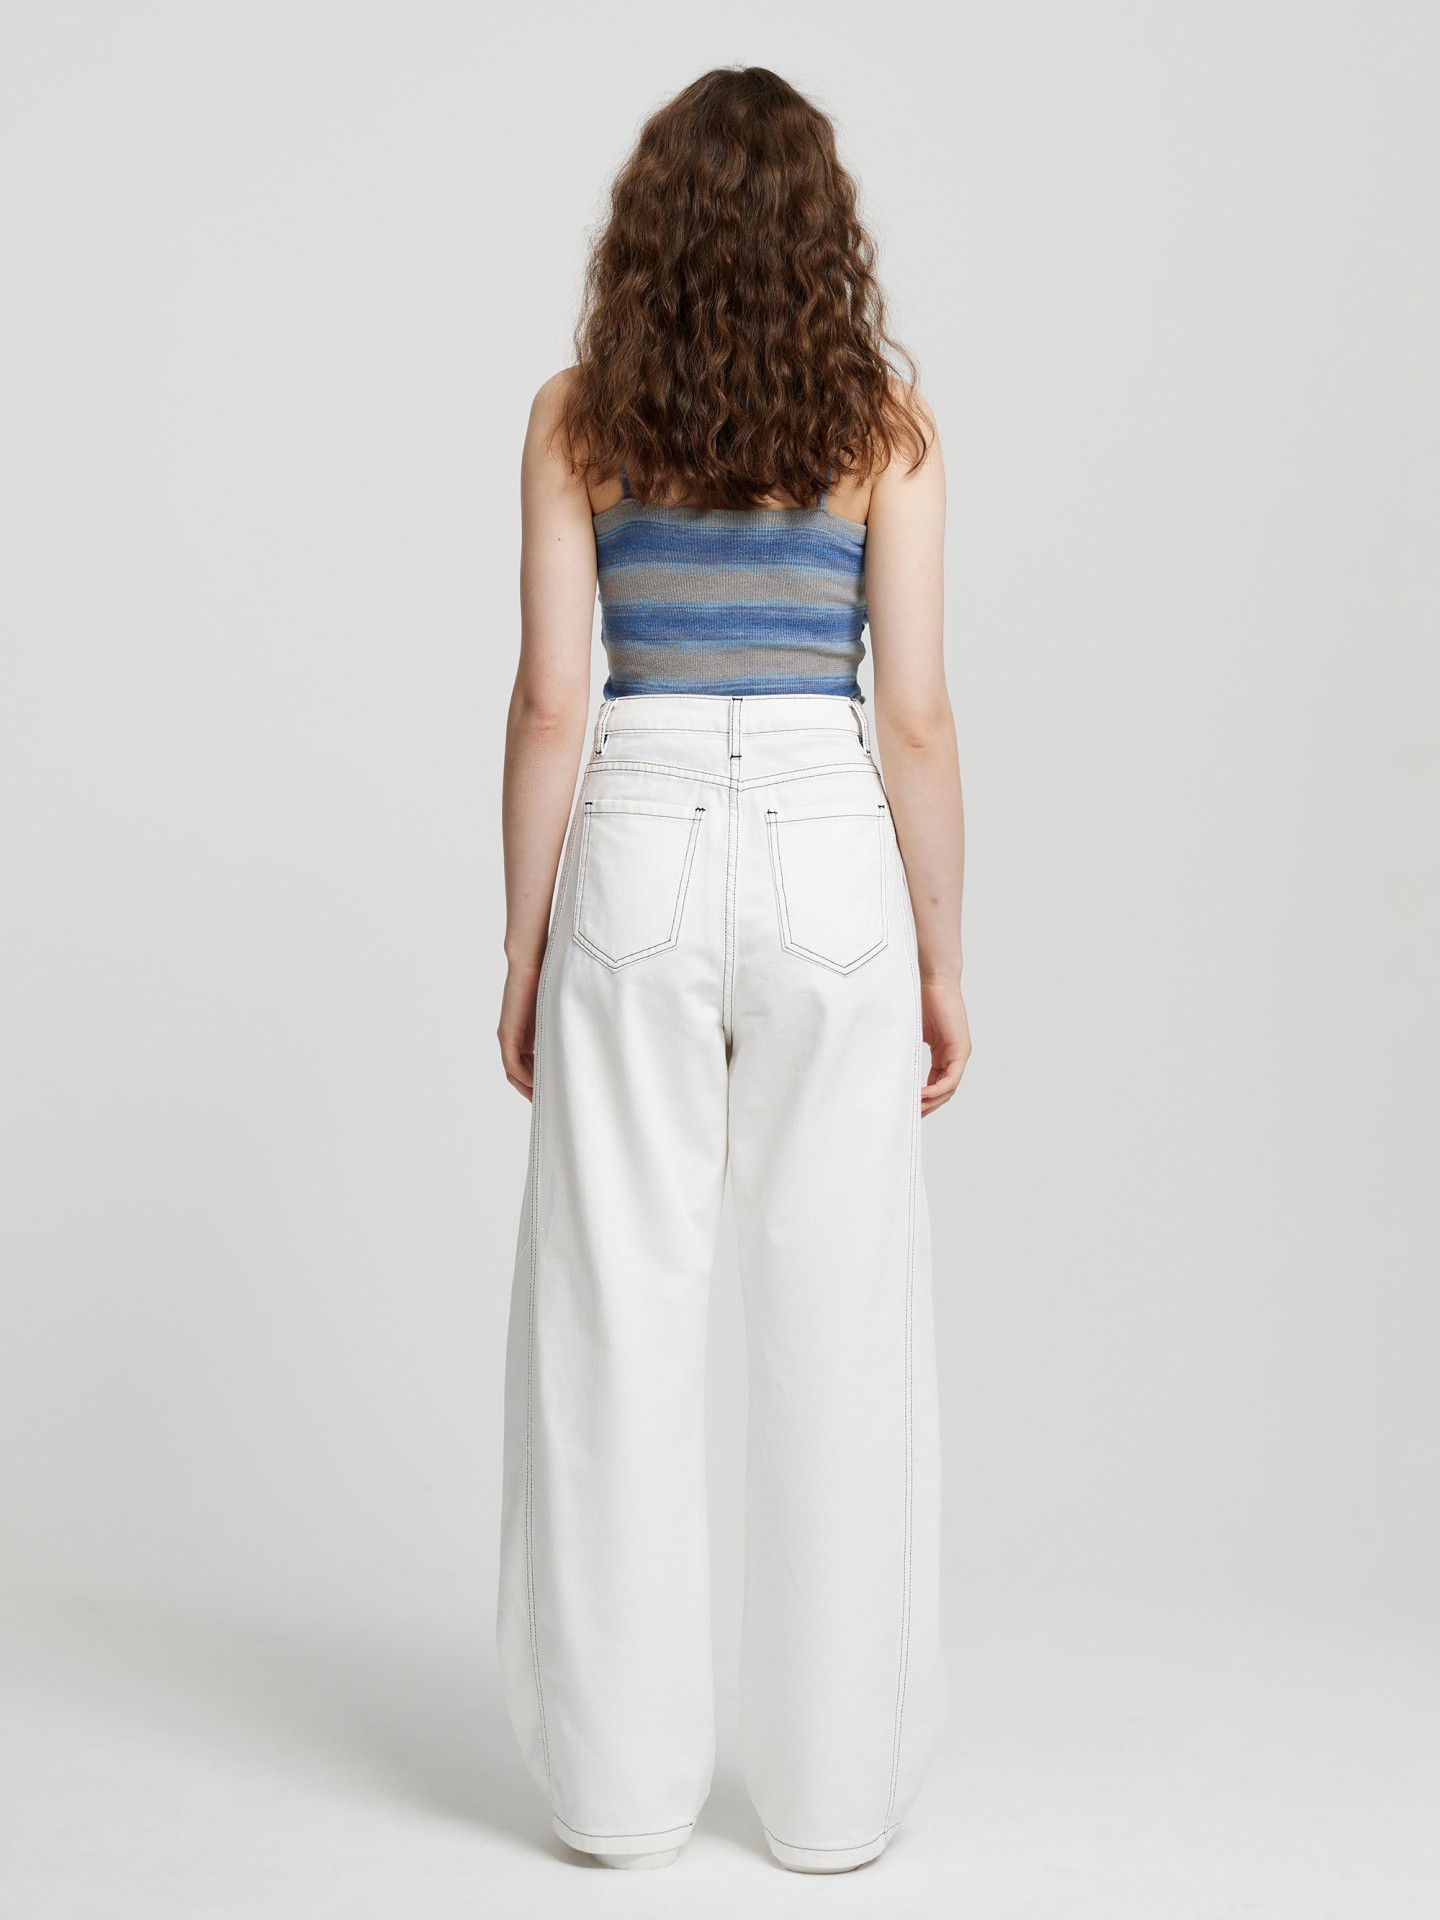 Jeans wide leg cintura alto de algodão ponto de contraste, Urbanic